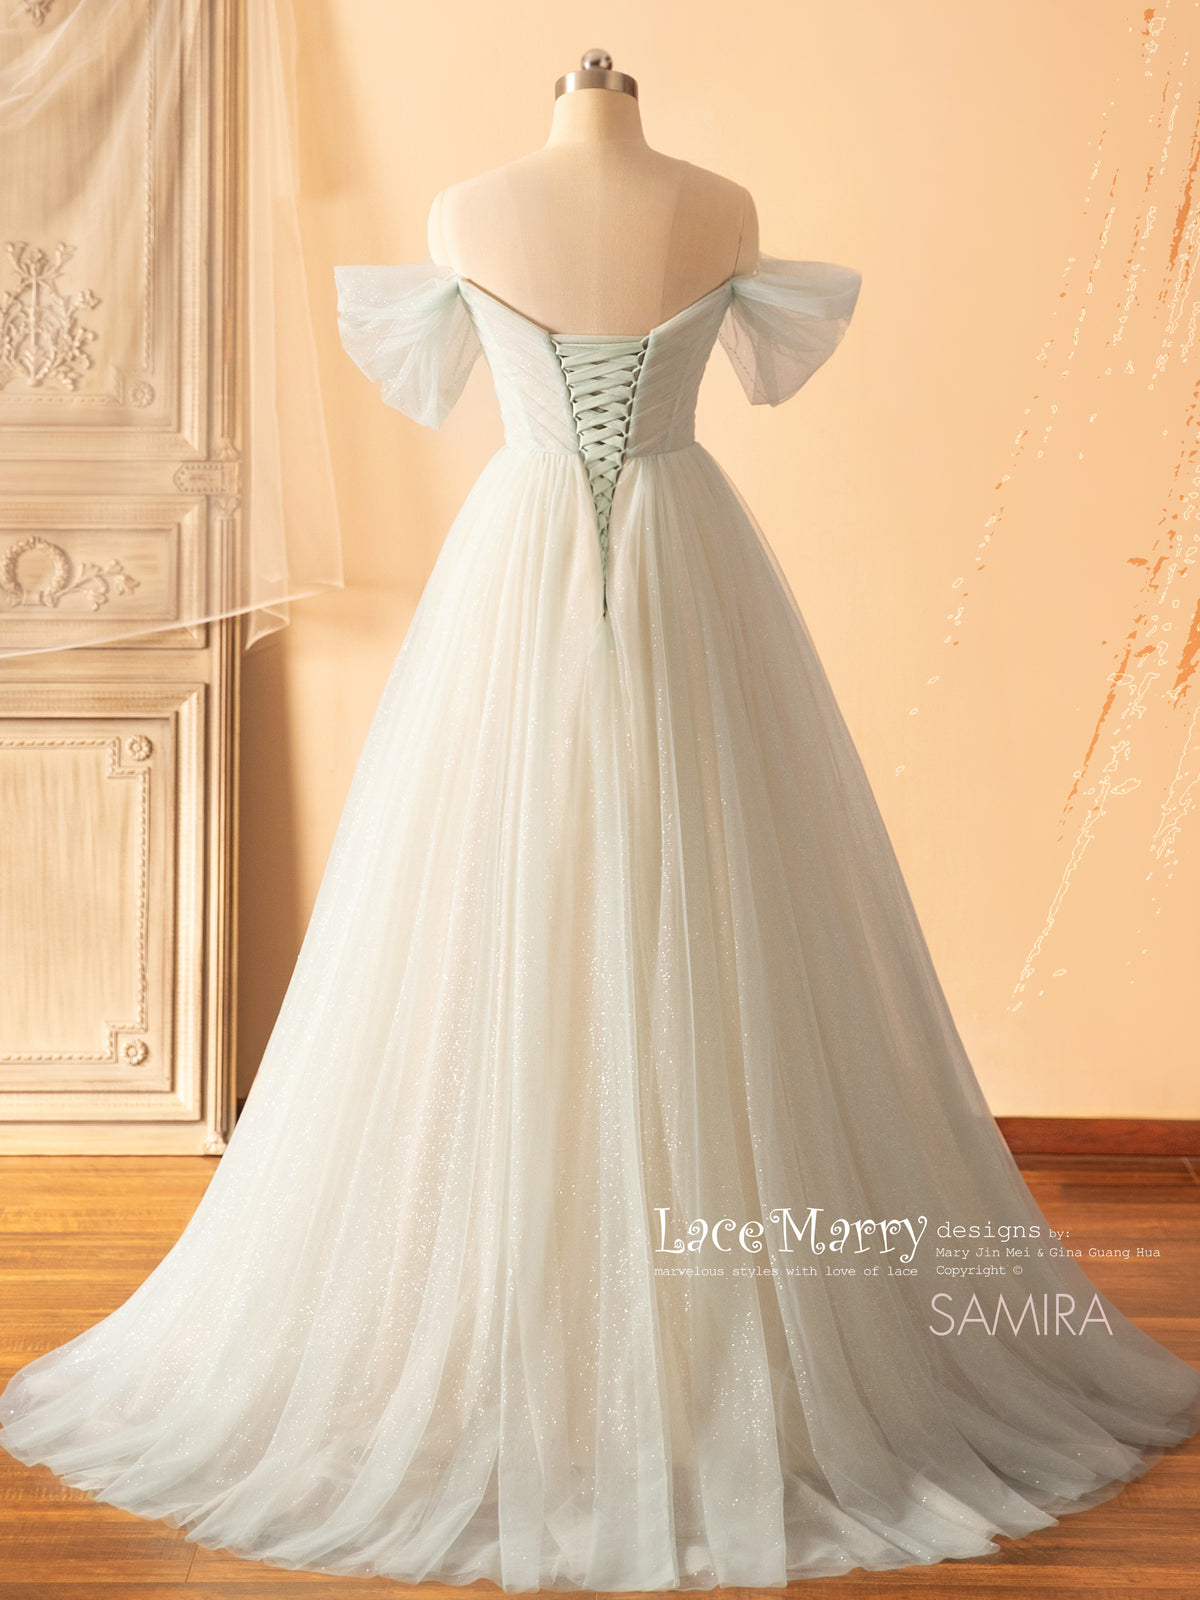 SAMIRA / Light Green Wedding Dress with Off Shoulder Straps